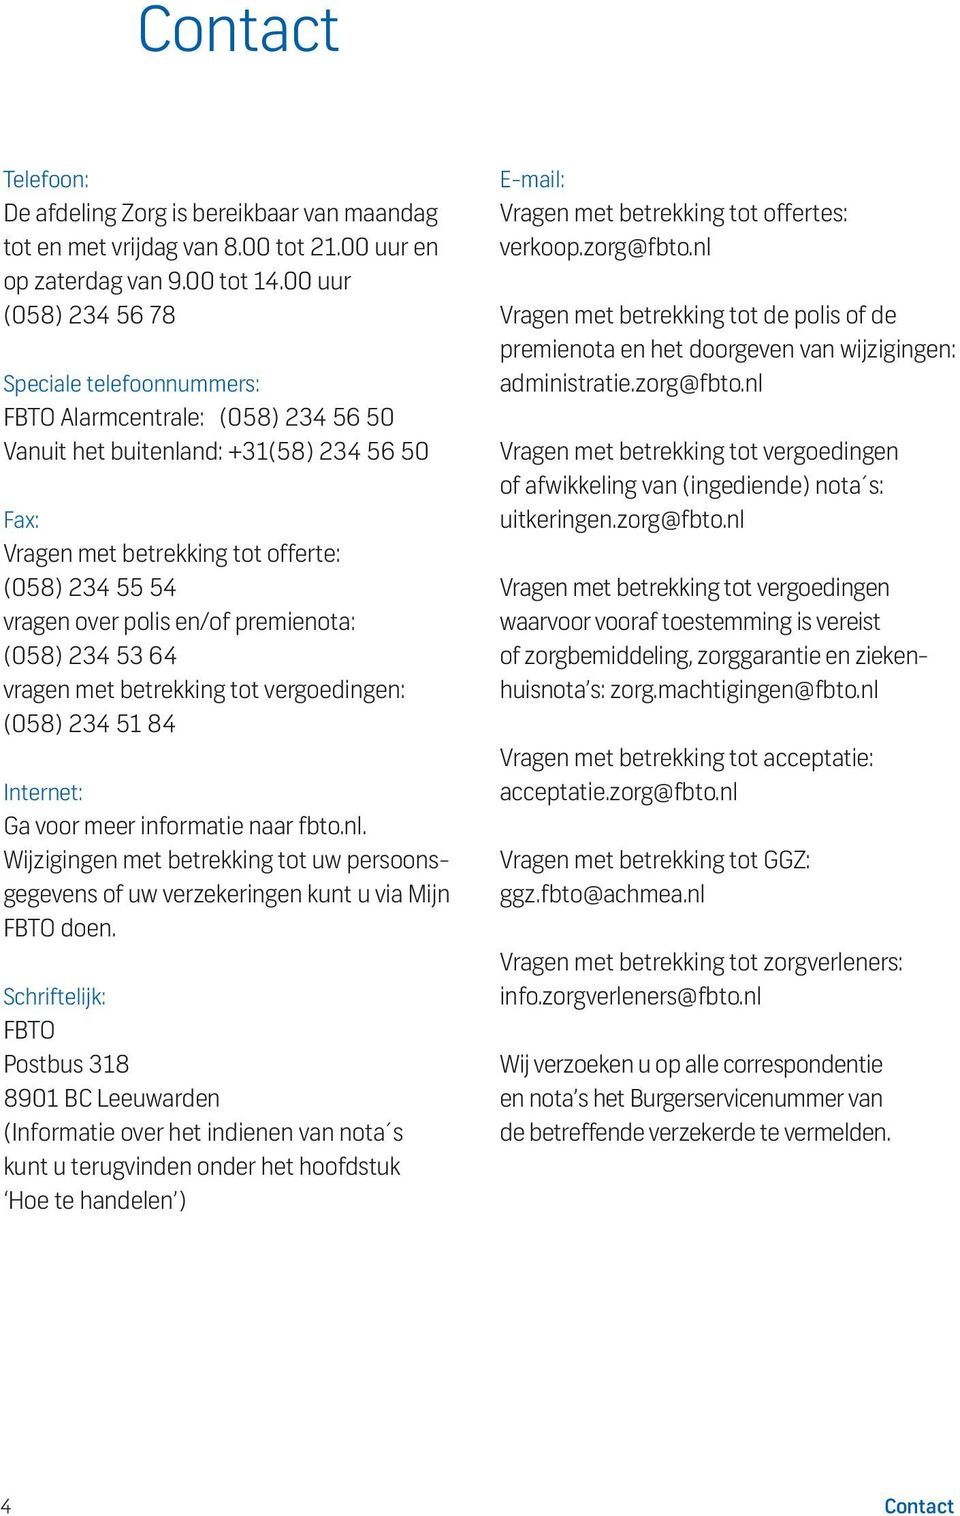 en/of premienota: (058) 234 53 64 vragen met betrekking tot vergoedingen: (058) 234 51 84 Internet: Ga voor meer informatie naar fbto.nl.